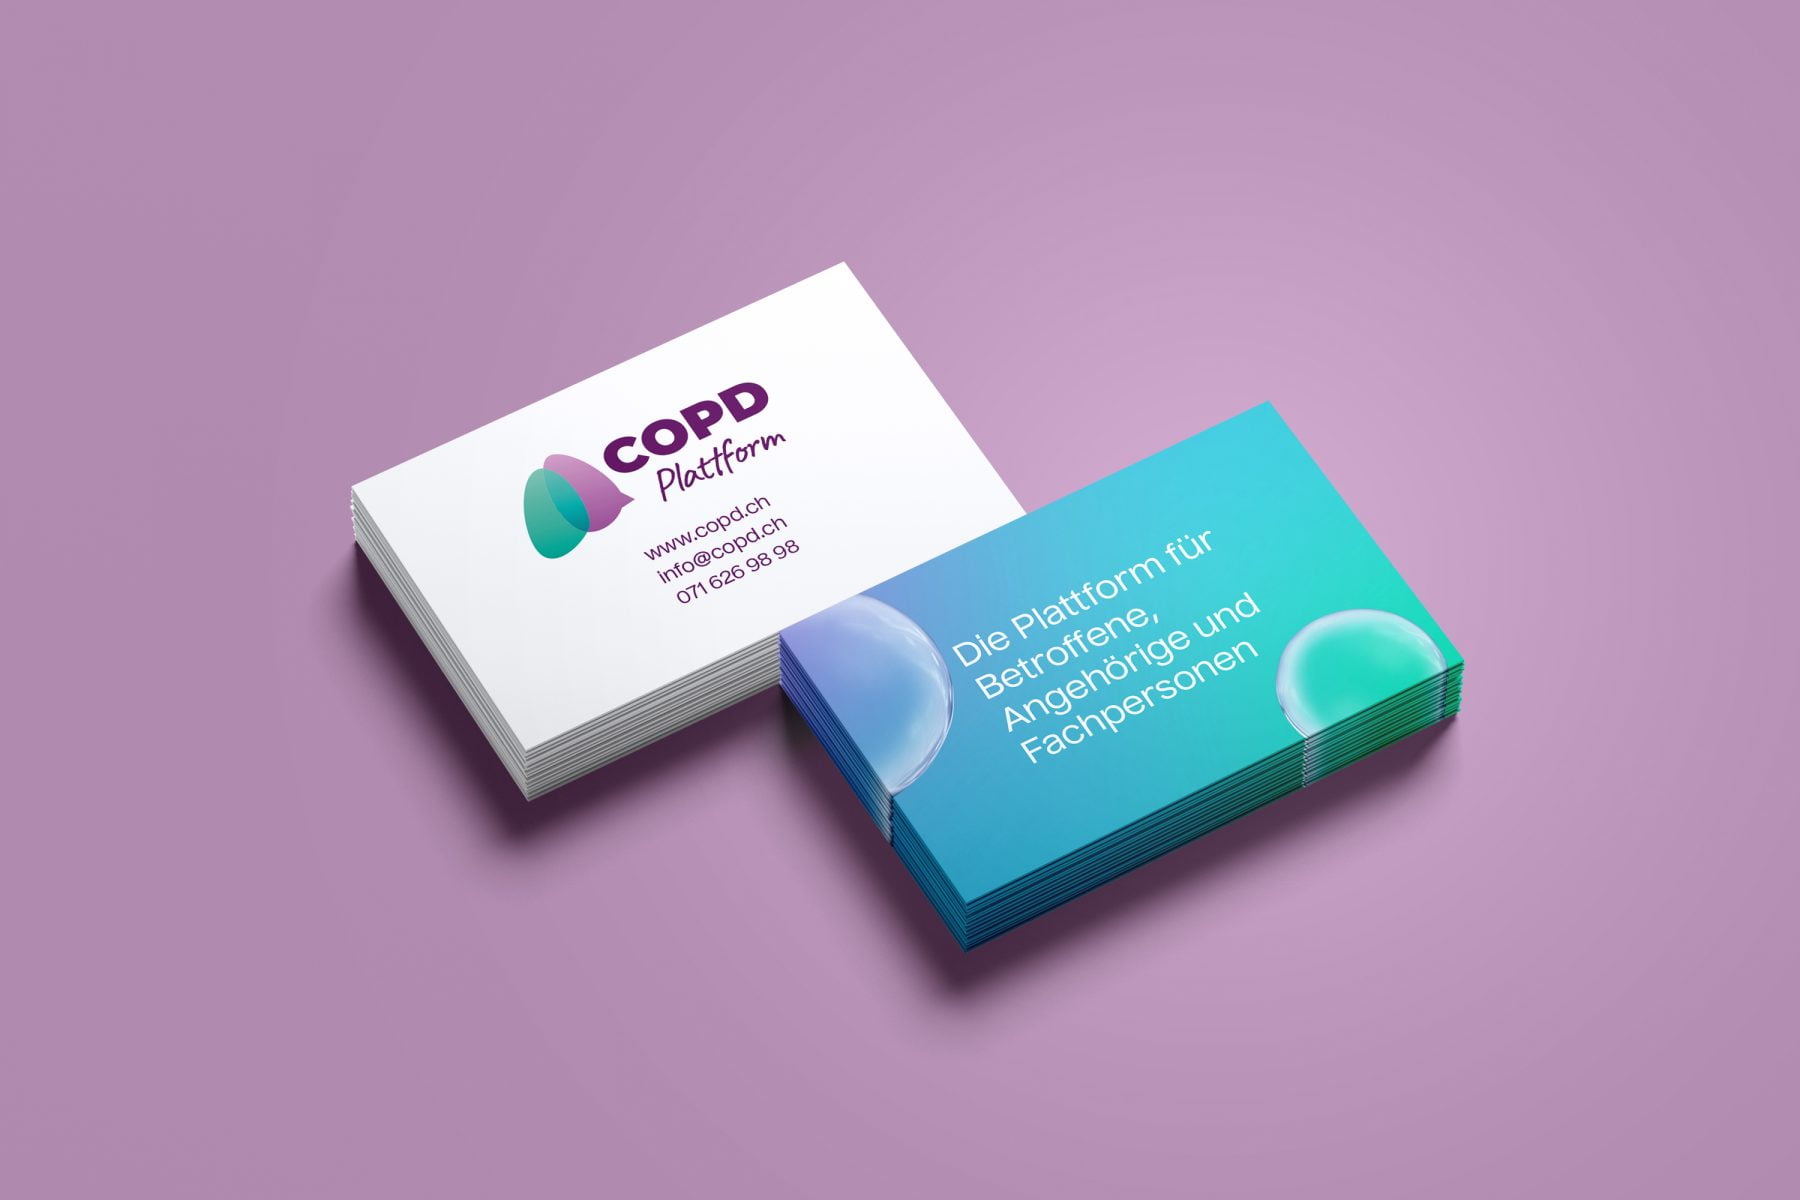 OHO Design, Die COPD Plattform